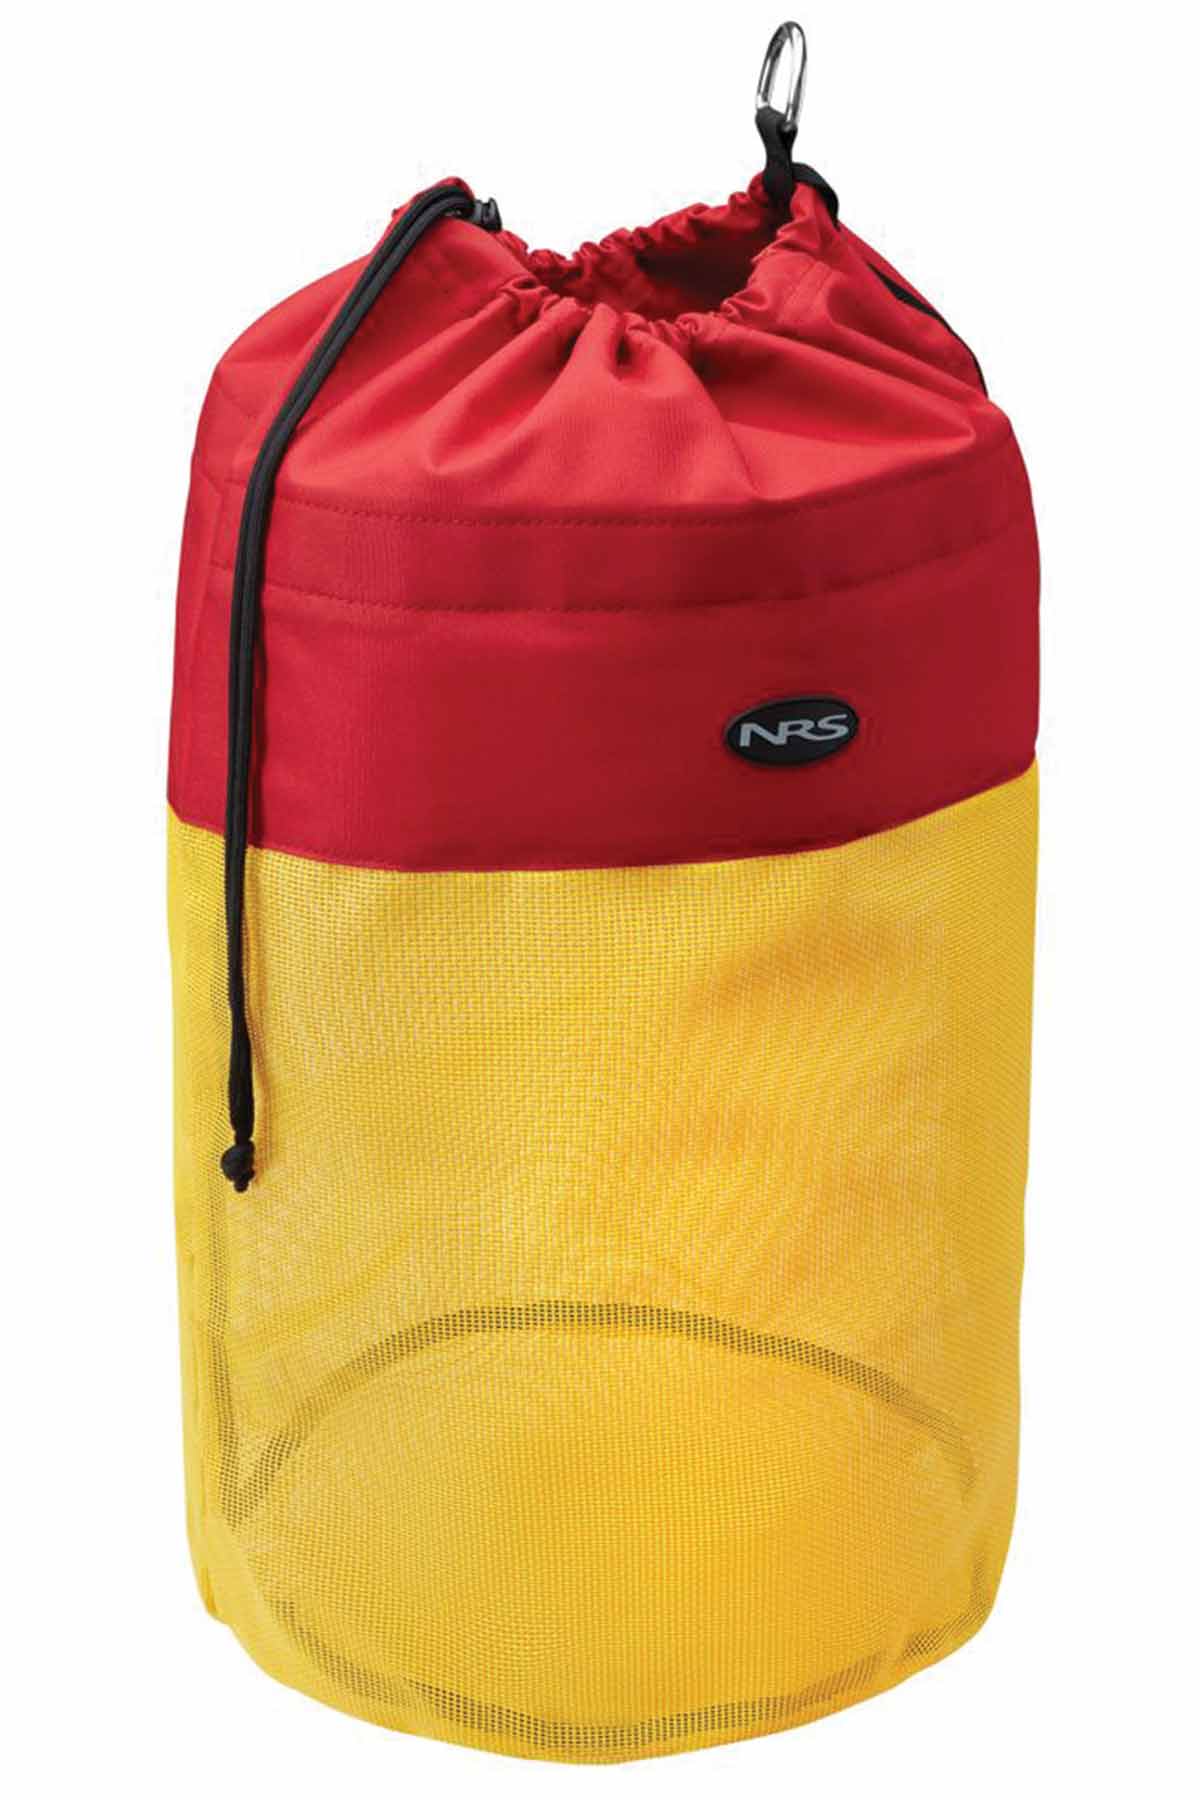 NRS Drag Bag Yellow